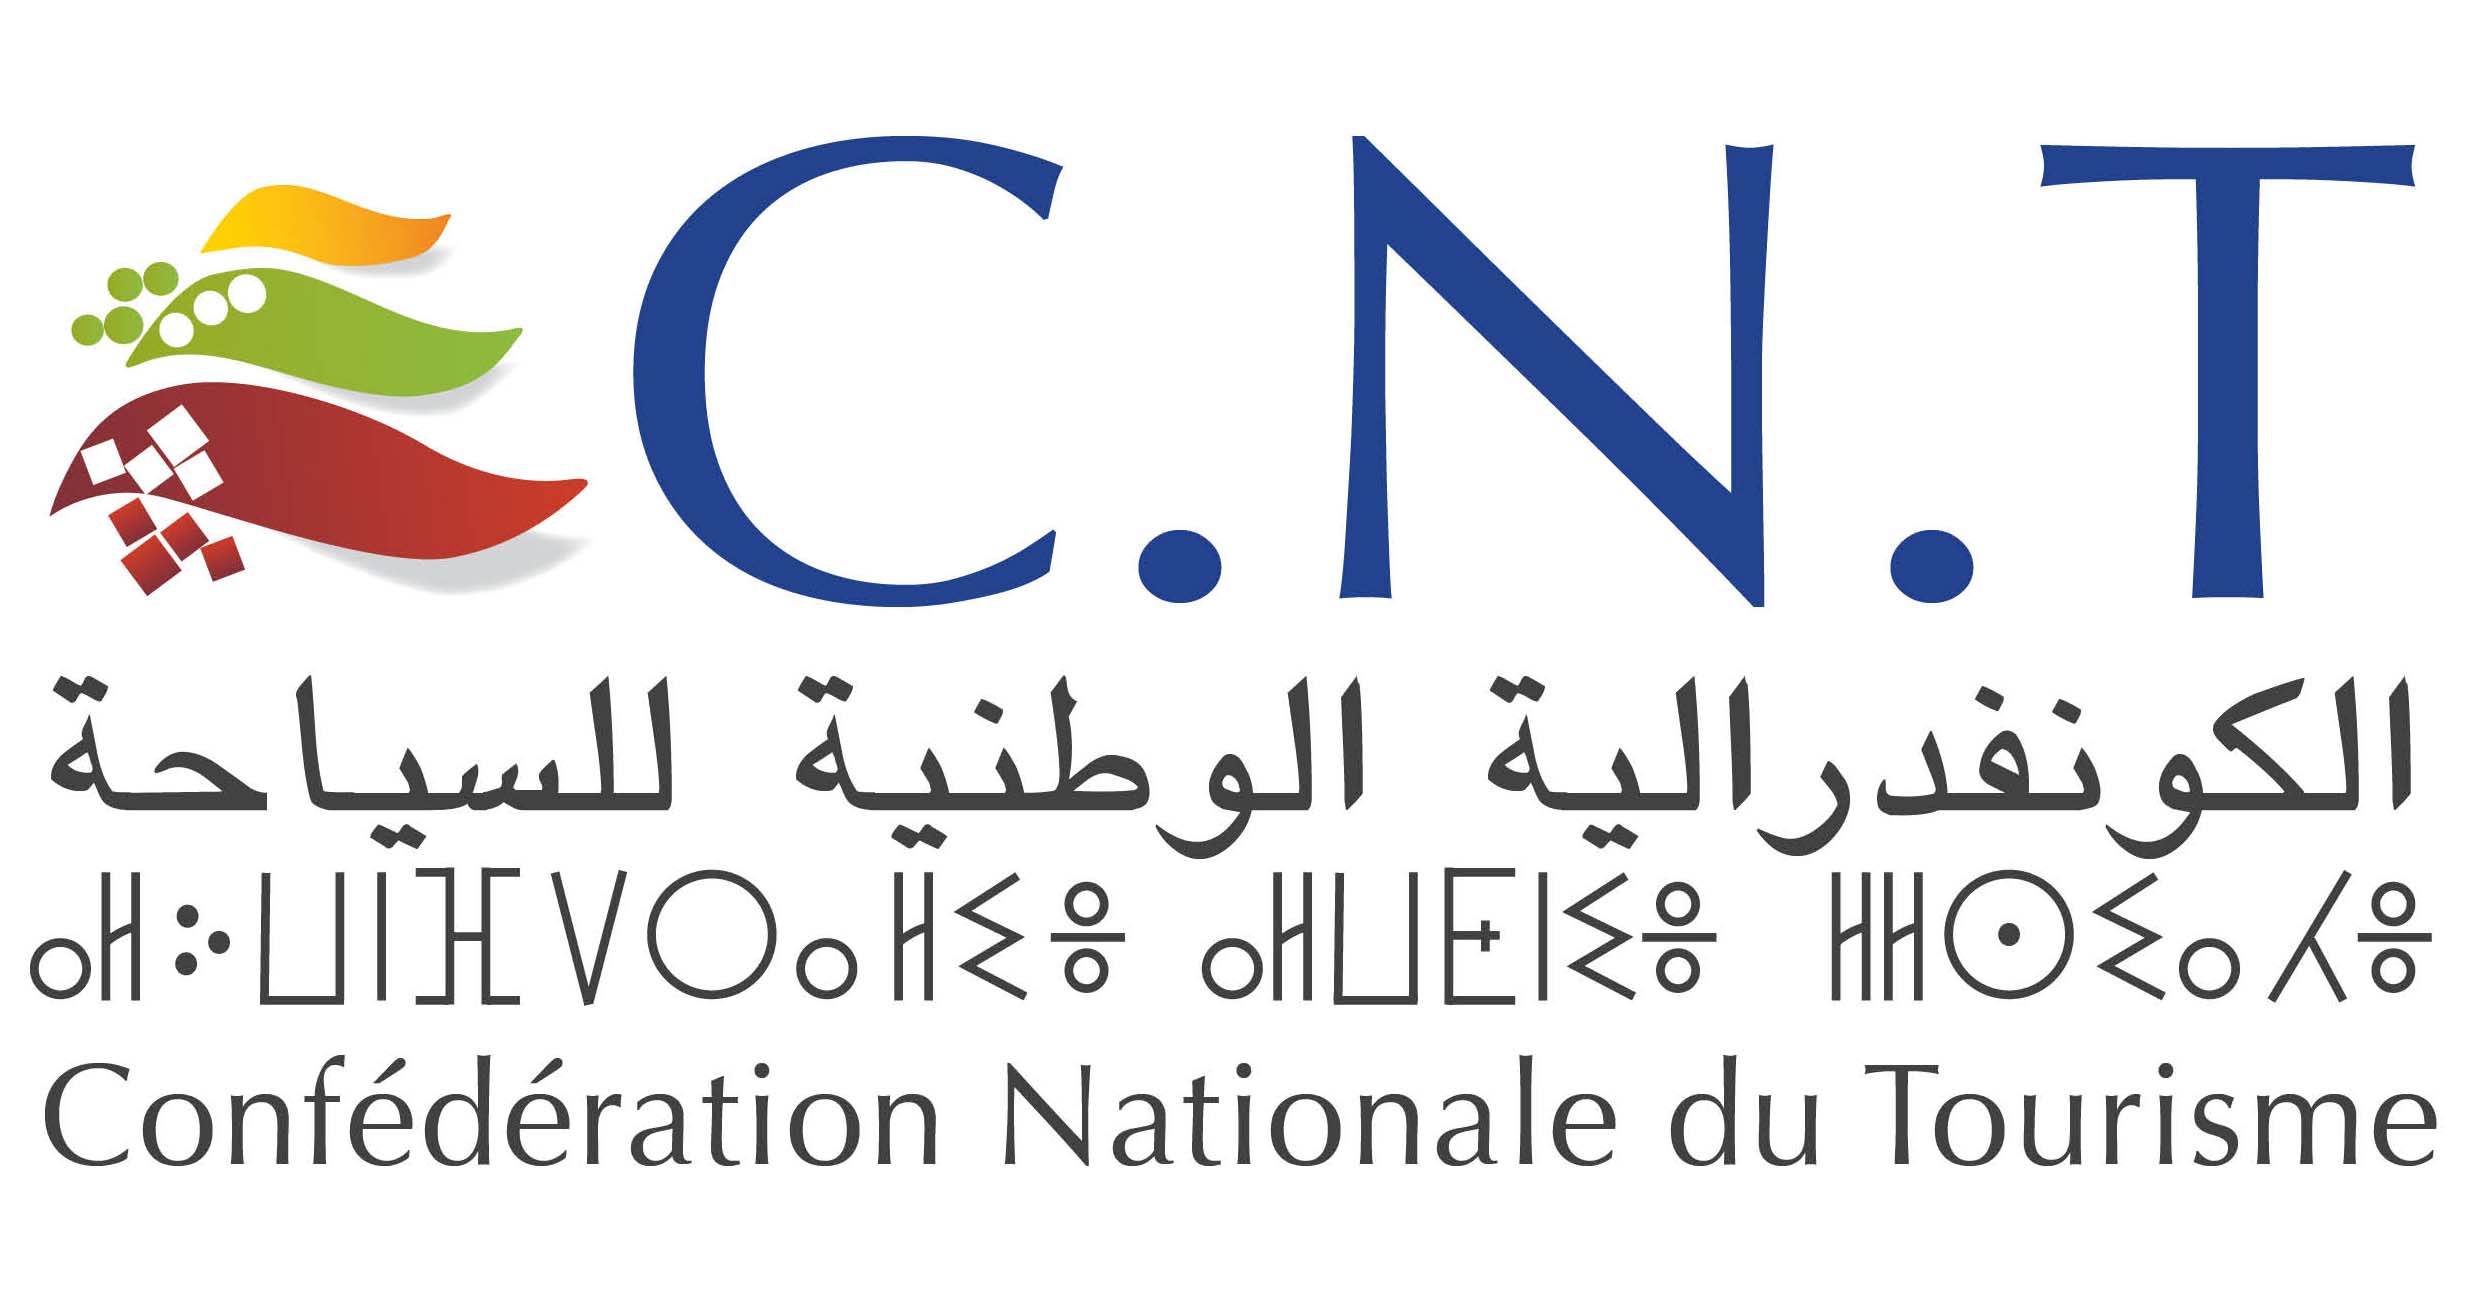 CNT logo HD.jpg